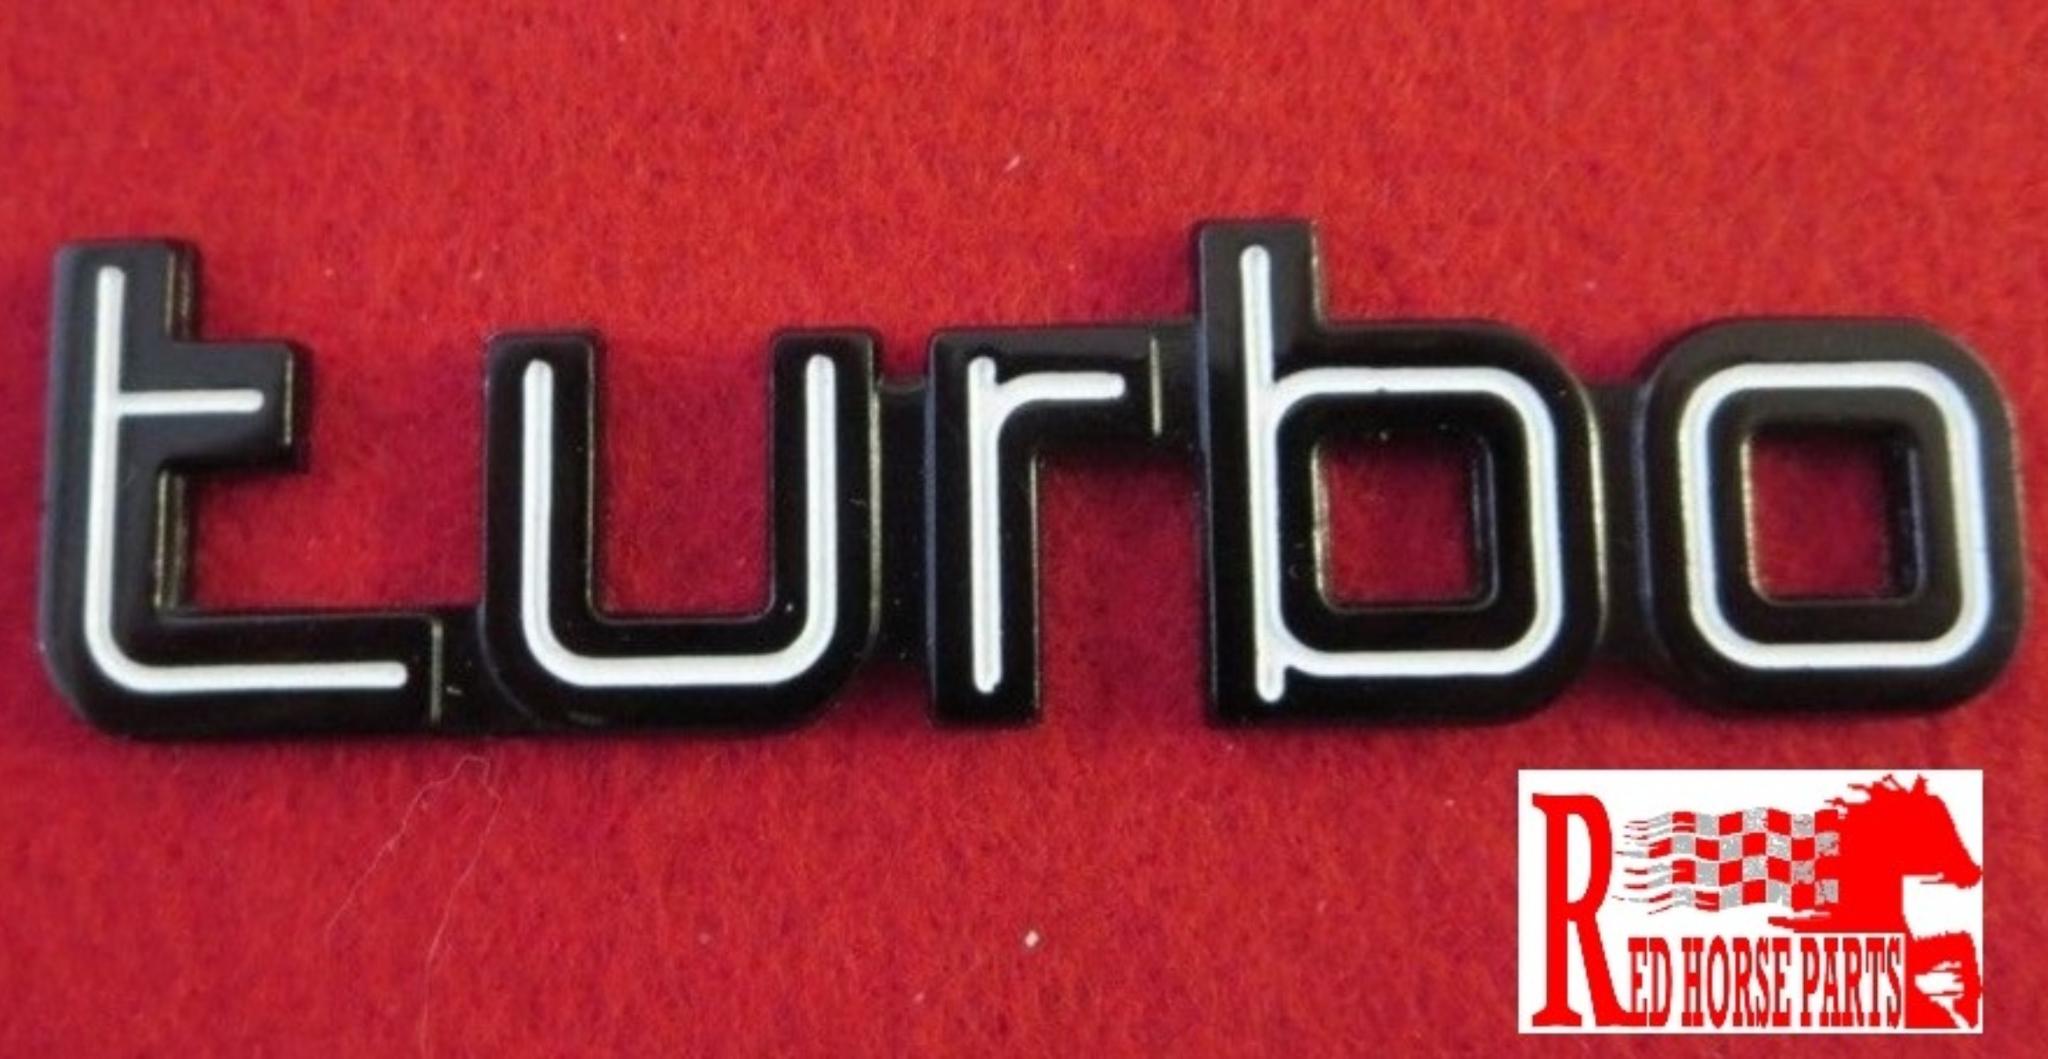 Ferrari turbo script badge